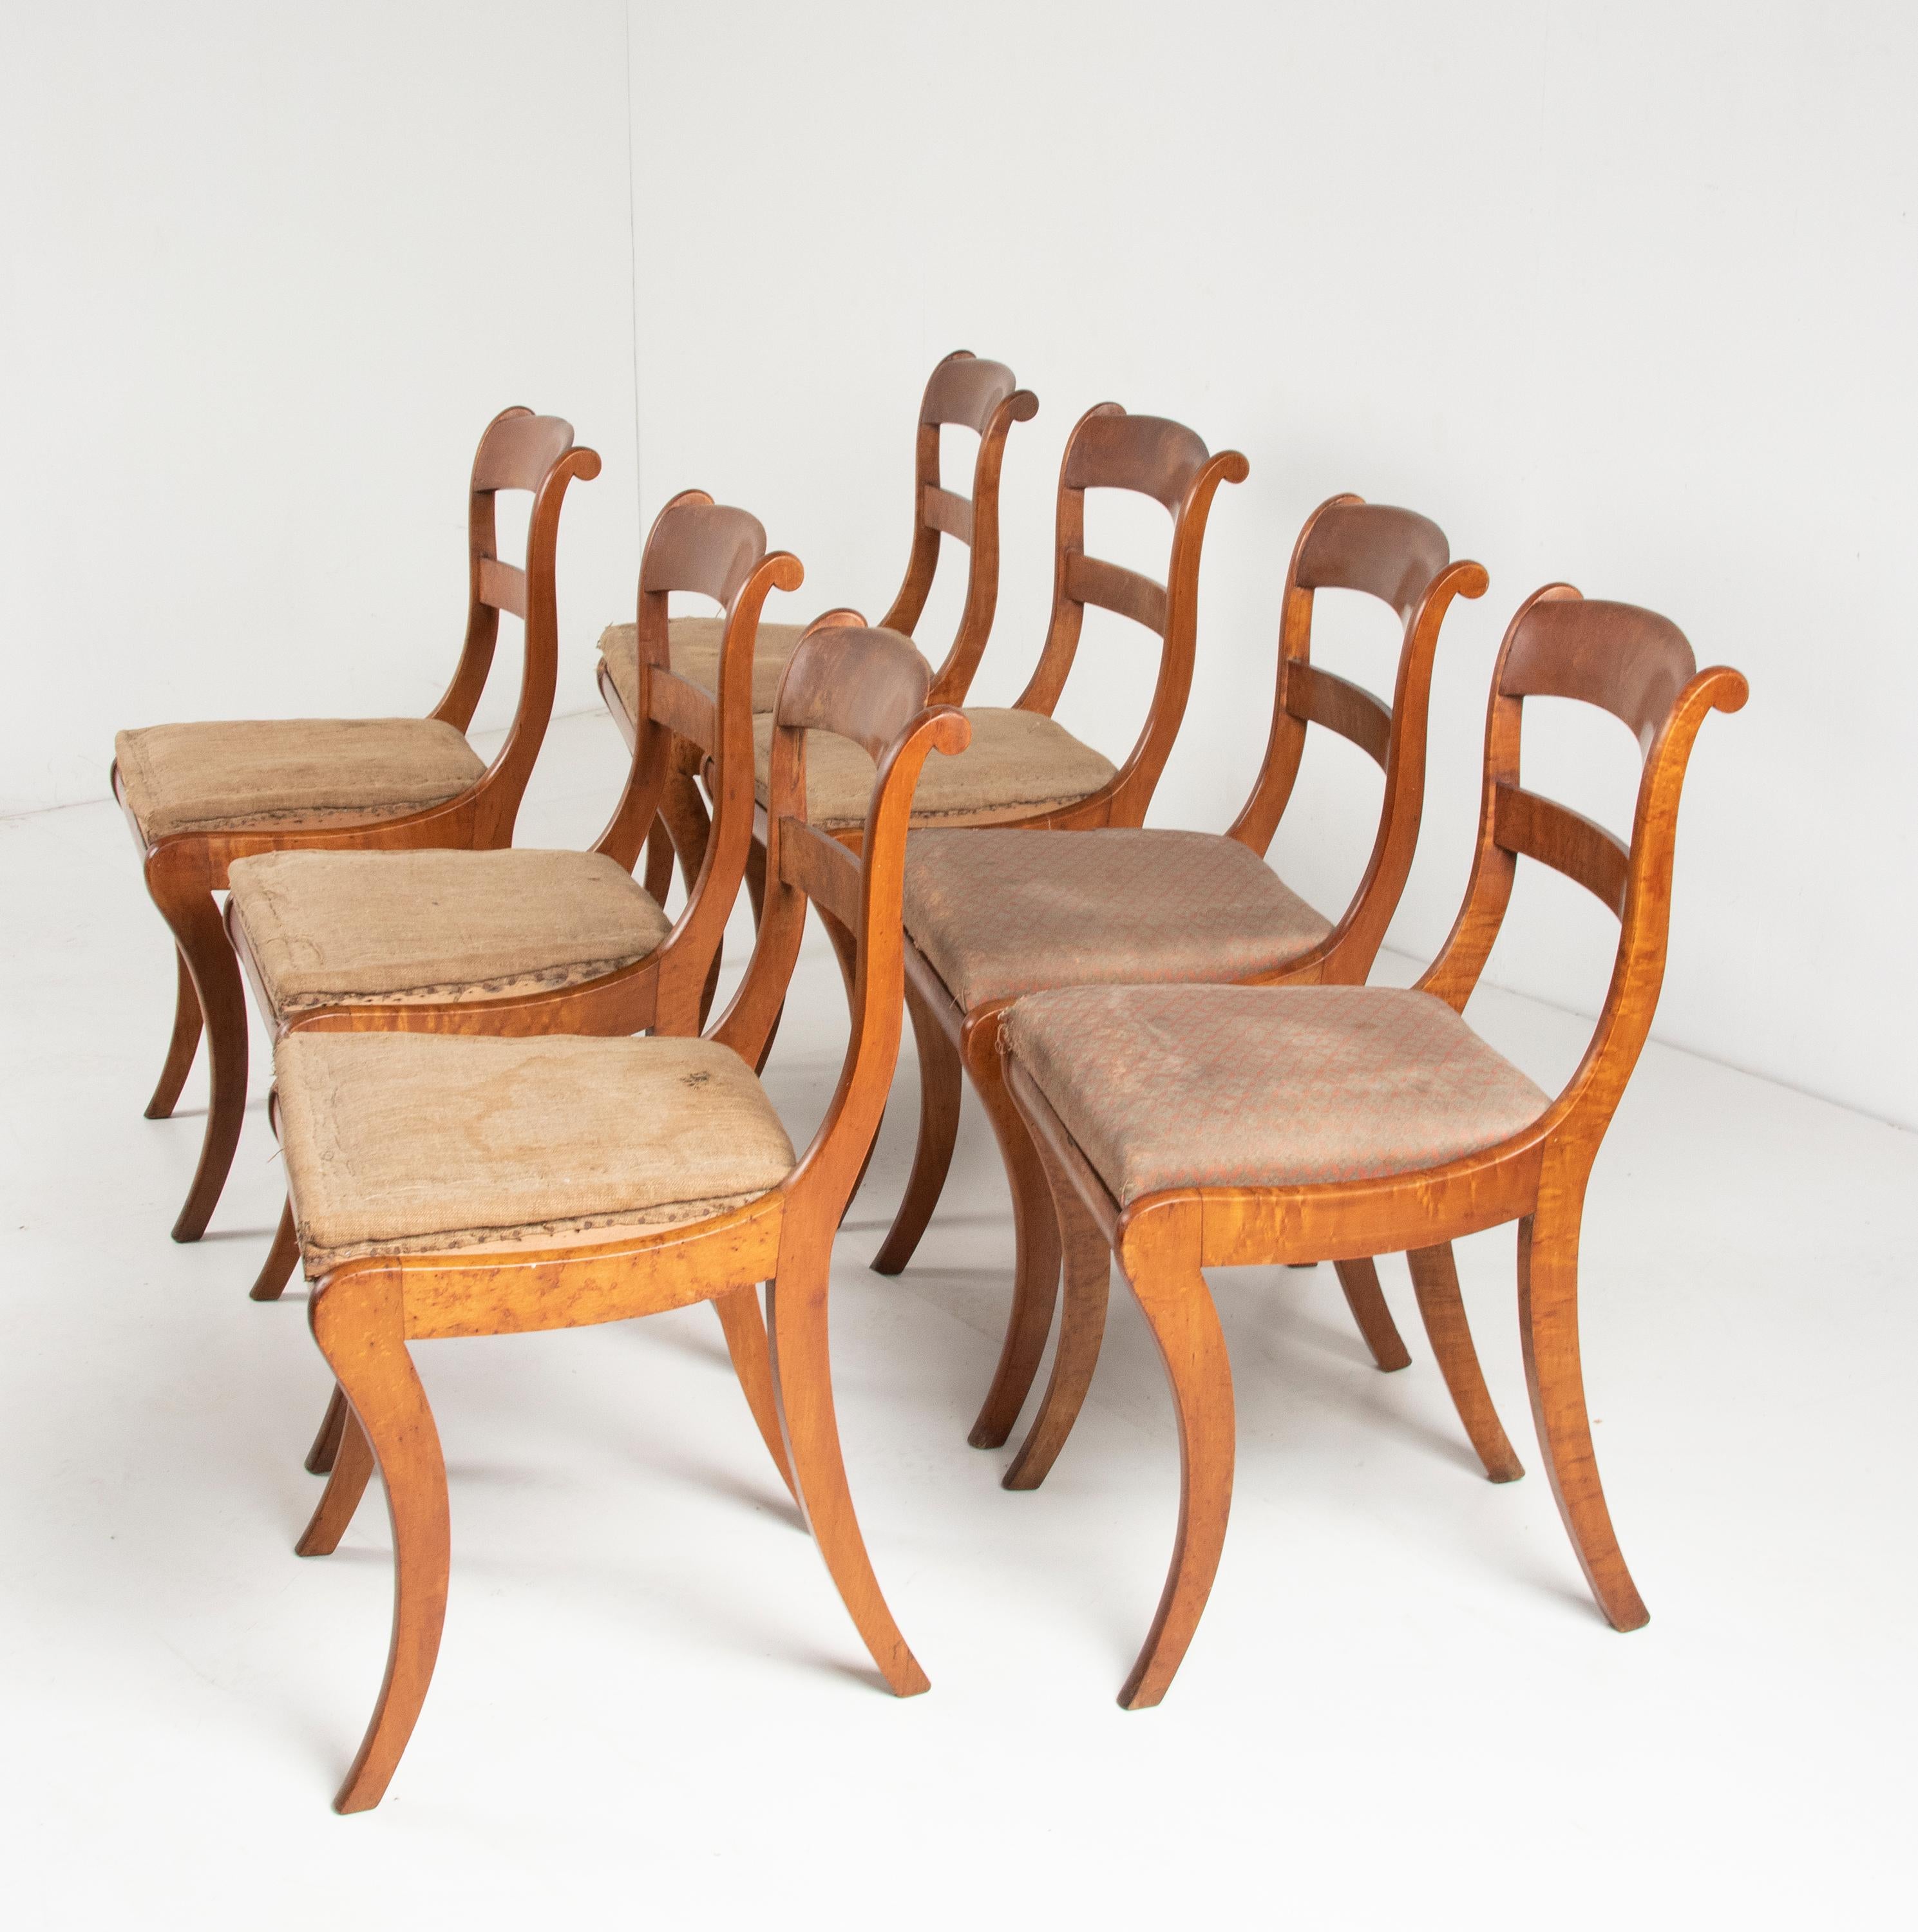 Ein Satz von sieben Esszimmerstühlen aus der französischen Periode Charles X. Hergestellt aus Vogelaugenahornholz. Diese antiken Stühle haben ein elegantes Design. Die geschwungenen Säbelbeine verleihen den Stühlen ein schönes Aussehen. Die Stühle